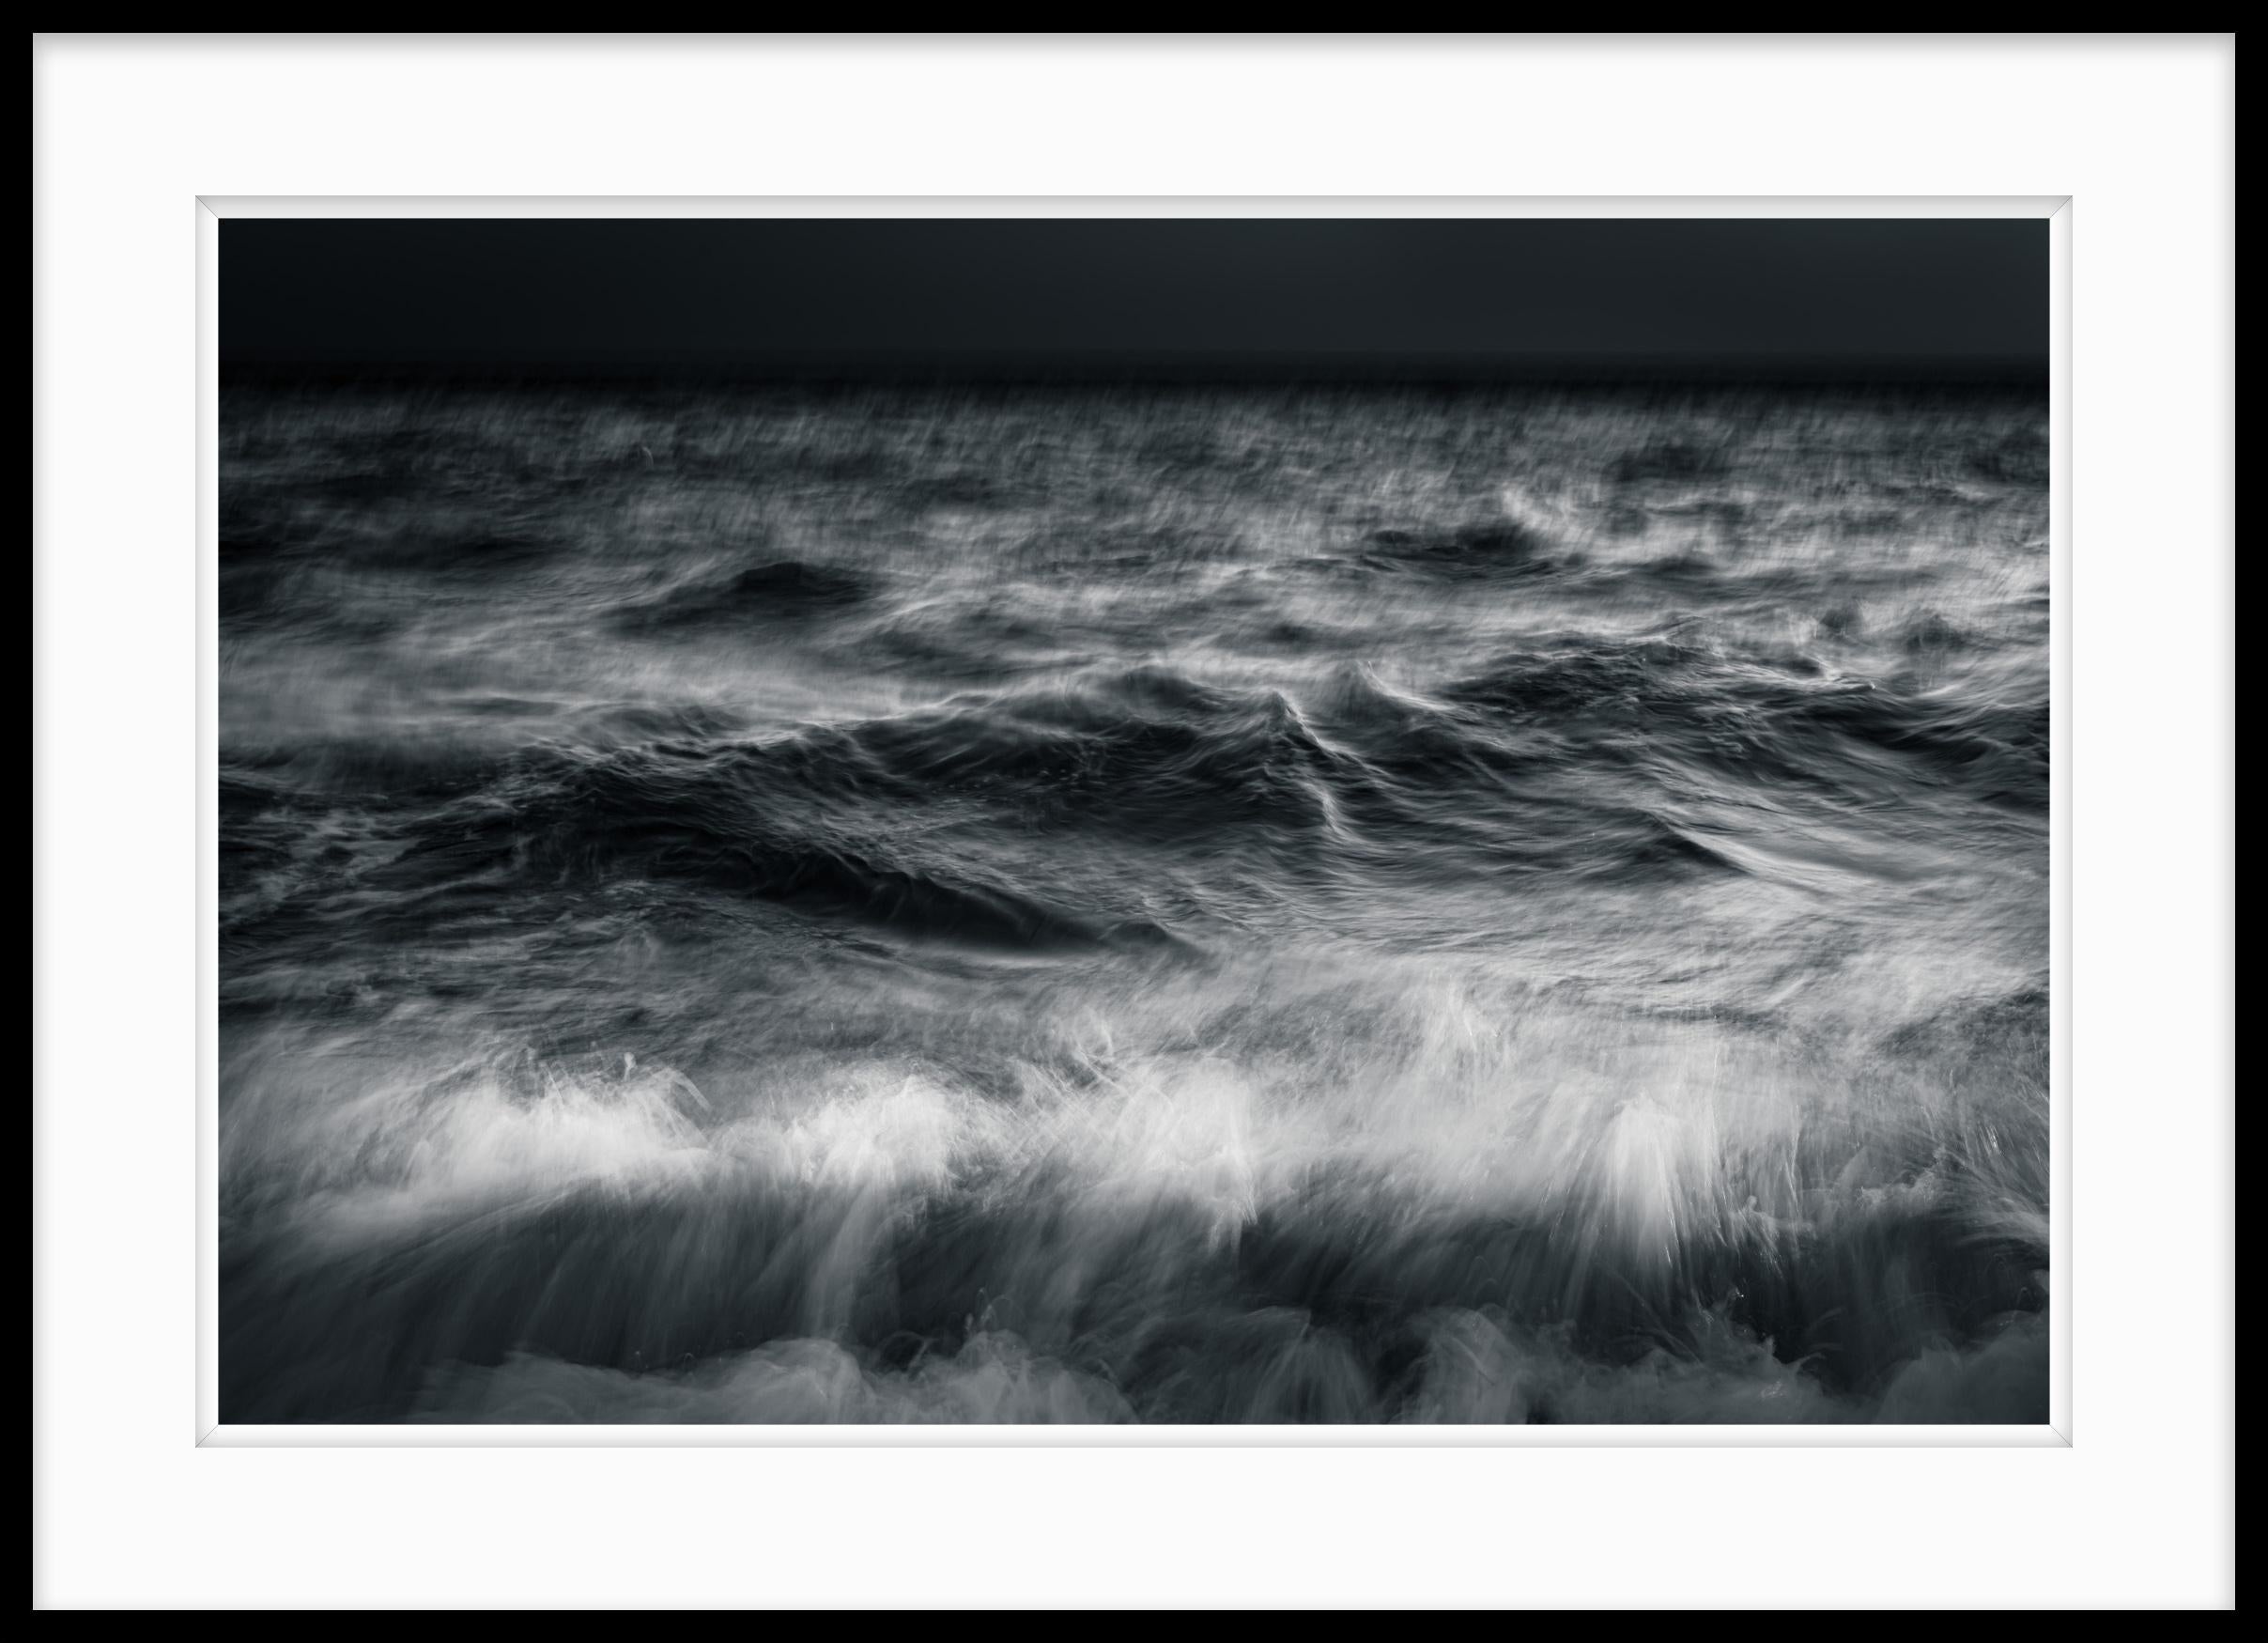 Limitierte Auflage der Schwarz-Weiß-Fotografie Ocean Ethereal #59

Dies ist die Nummer 59 aus der Serie Kinetic Solitude. Es wurde im Dow Museum of Fine Arts im Rahmen einer Ausstellung gezeigt, die sich mit Variationen zum Thema Wasser